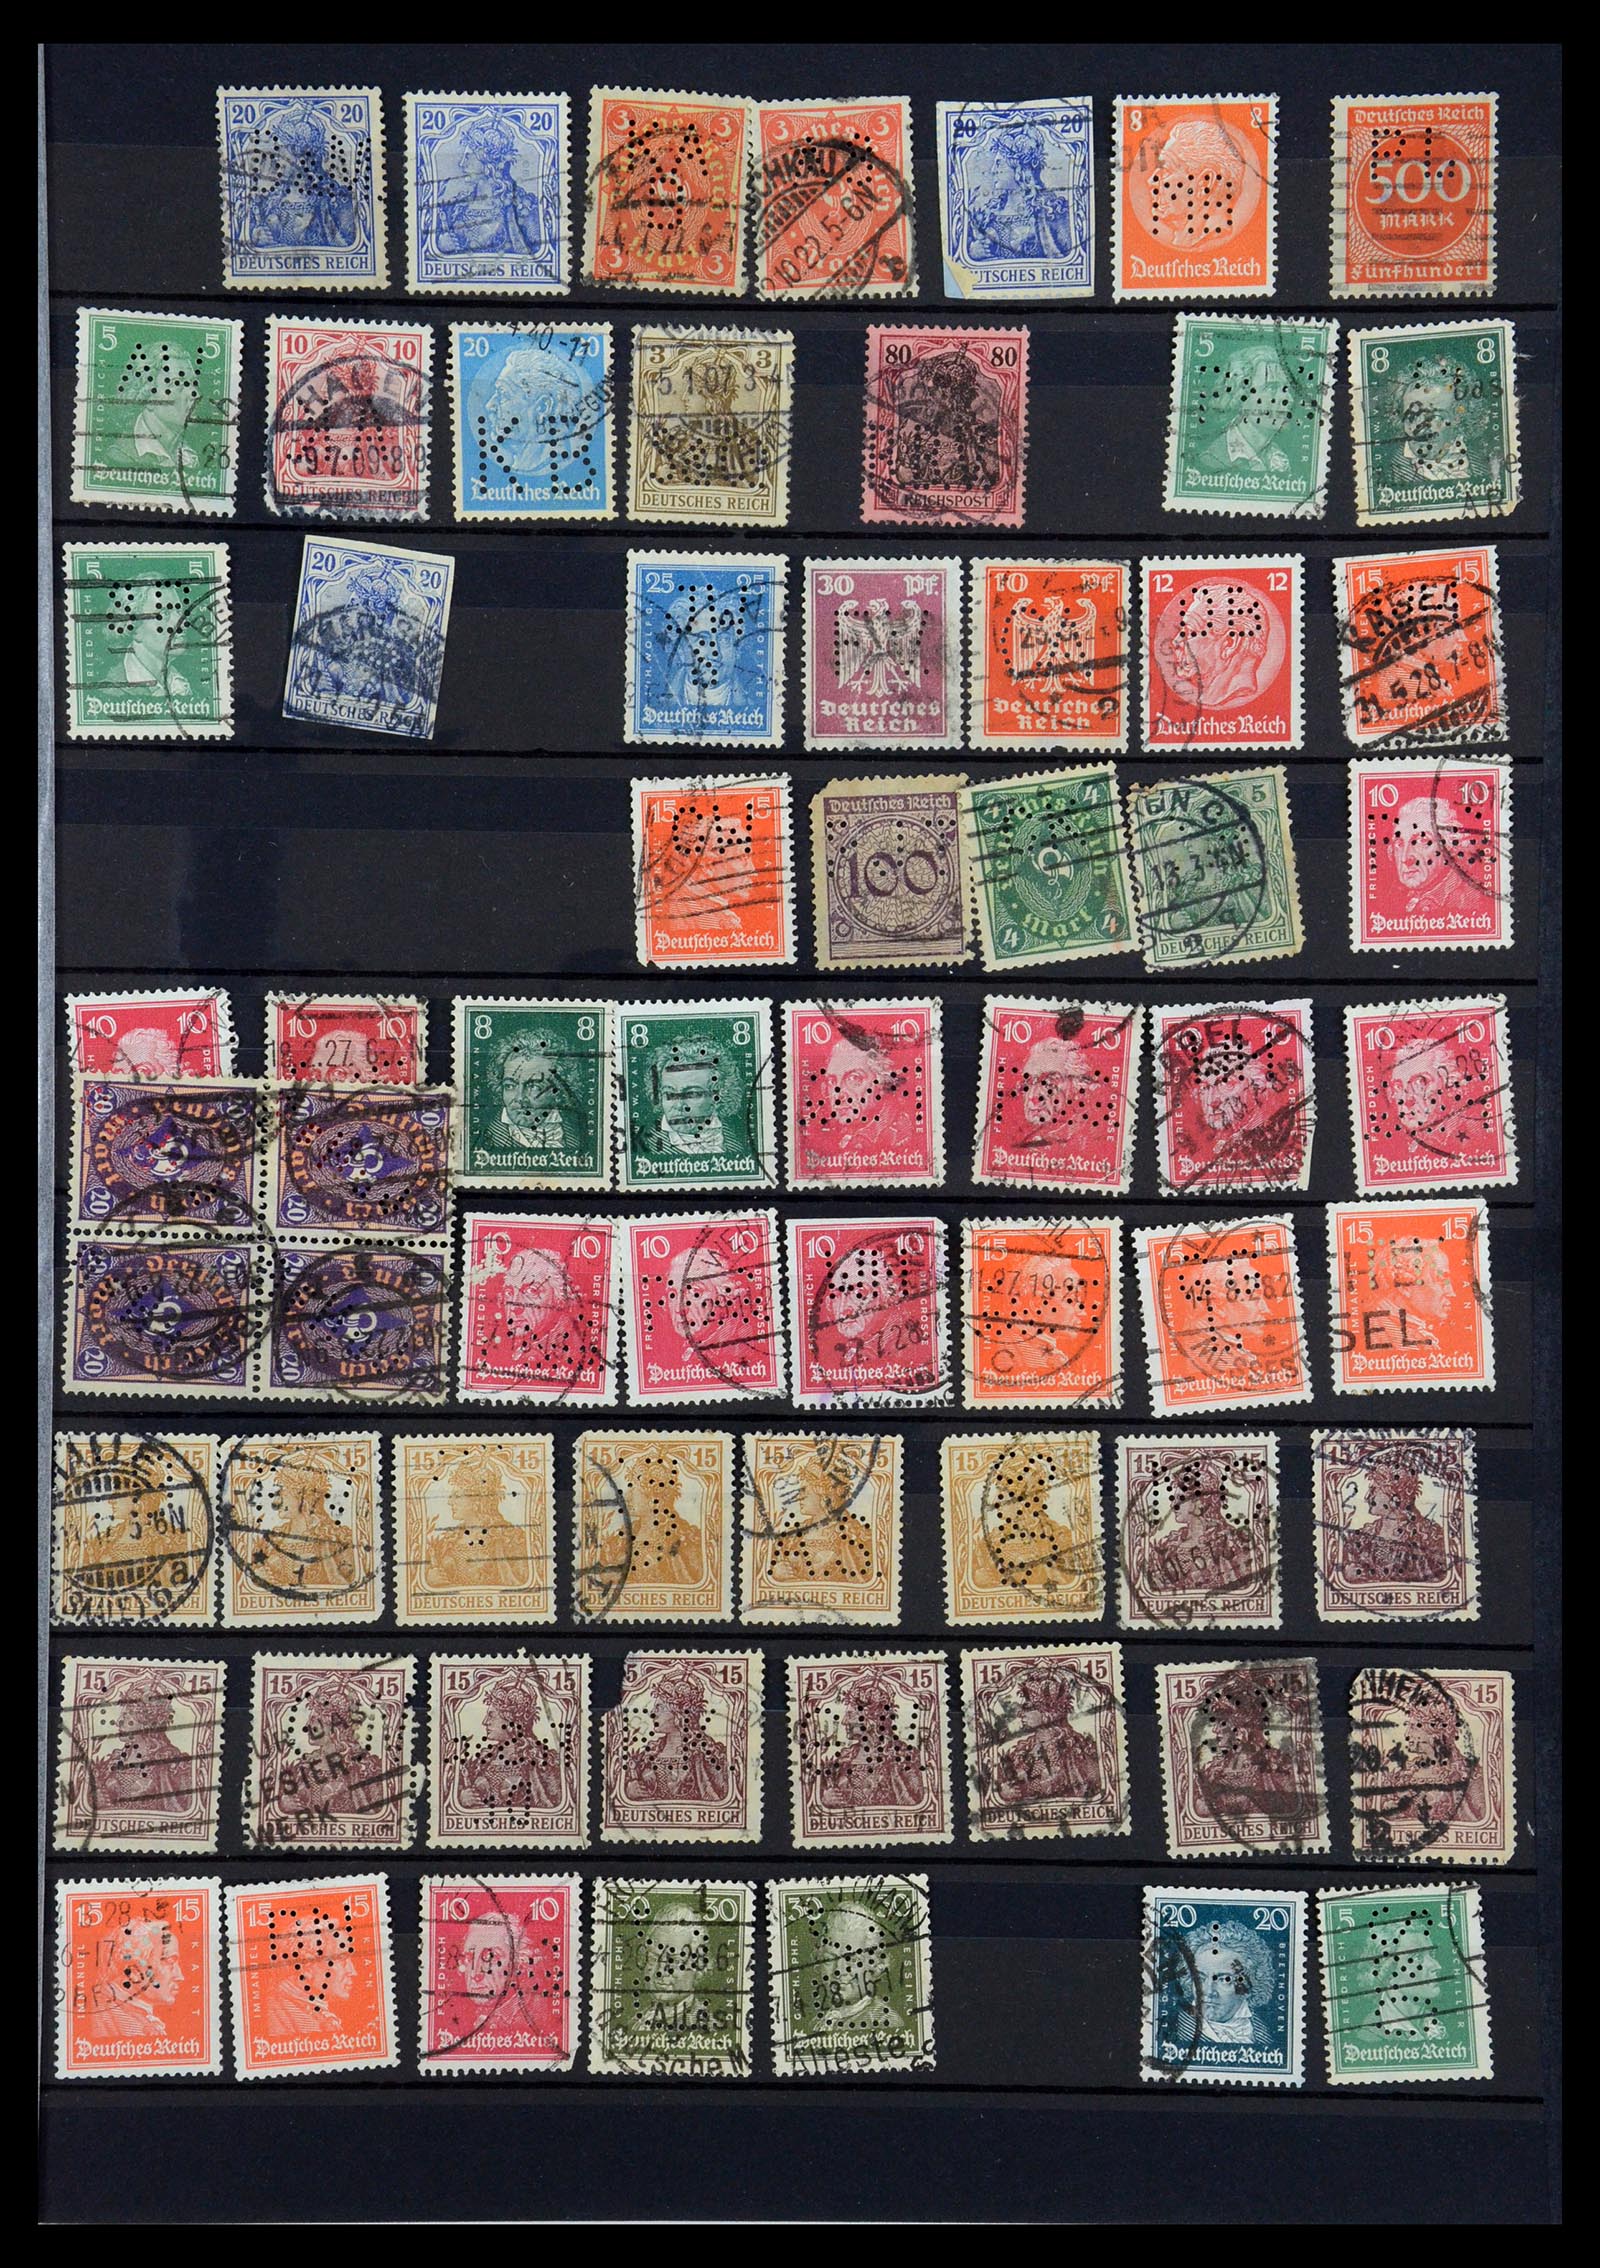 35183 039 - Stamp Collection 35183 German Reich perfins 1880-1945.